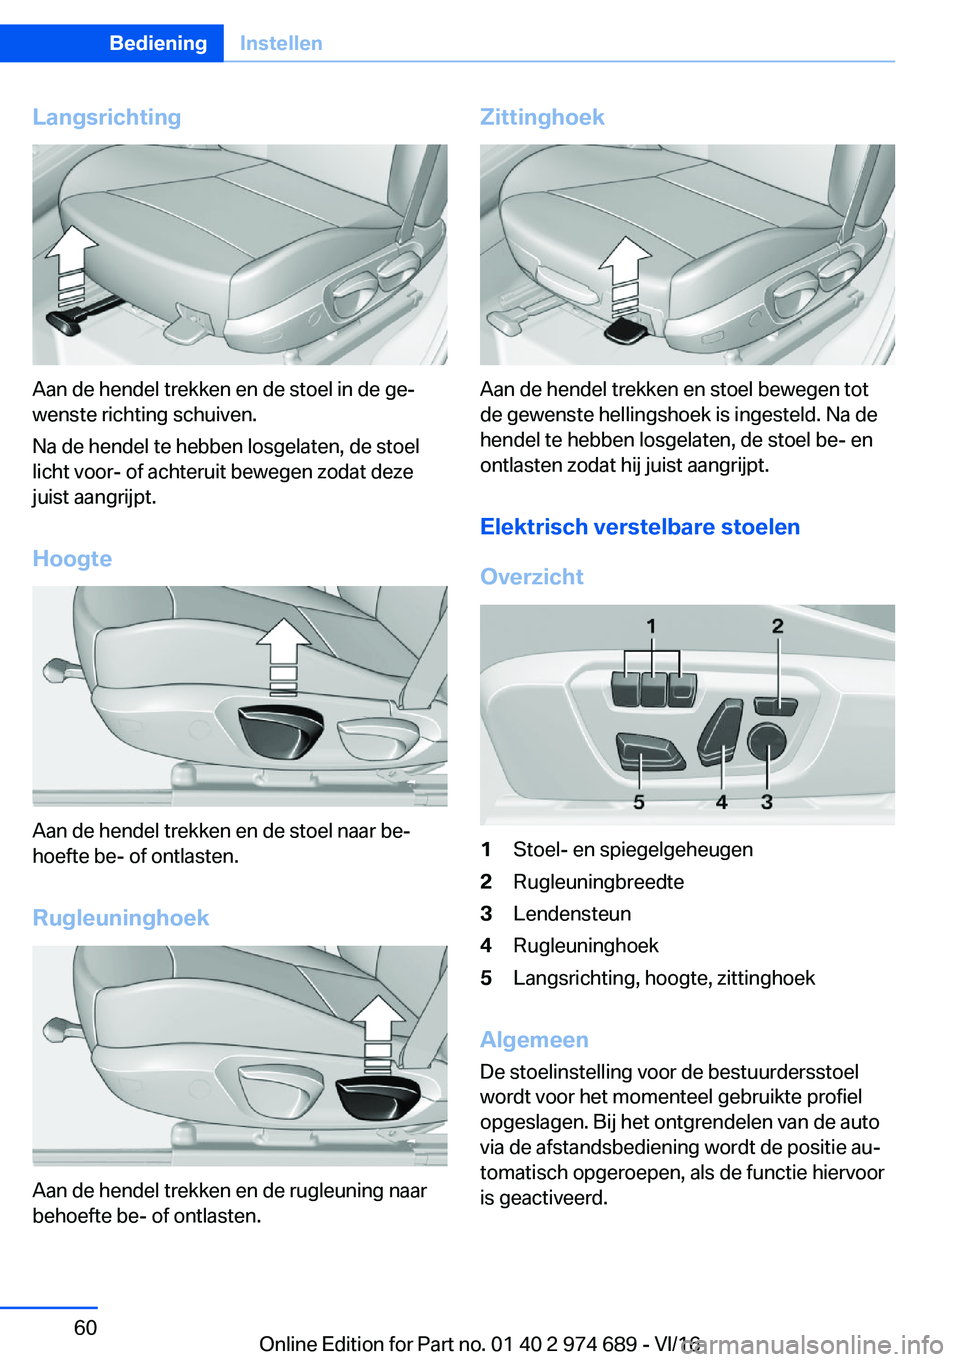 BMW M2 2017  Instructieboekjes (in Dutch) �L�a�n�g�s�r�i�c�h�t�i�n�g
�A�a�n� �d�e� �h�e�n�d�e�l� �t�r�e�k�k�e�n� �e�n� �d�e� �s�t�o�e�l� �i�n� �d�e� �g�ej
�w�e�n�s�t�e� �r�i�c�h�t�i�n�g� �s�c�h�u�i�v�e�n�.
�N�a� �d�e� �h�e�n�d�e�l� �t�e� �h�